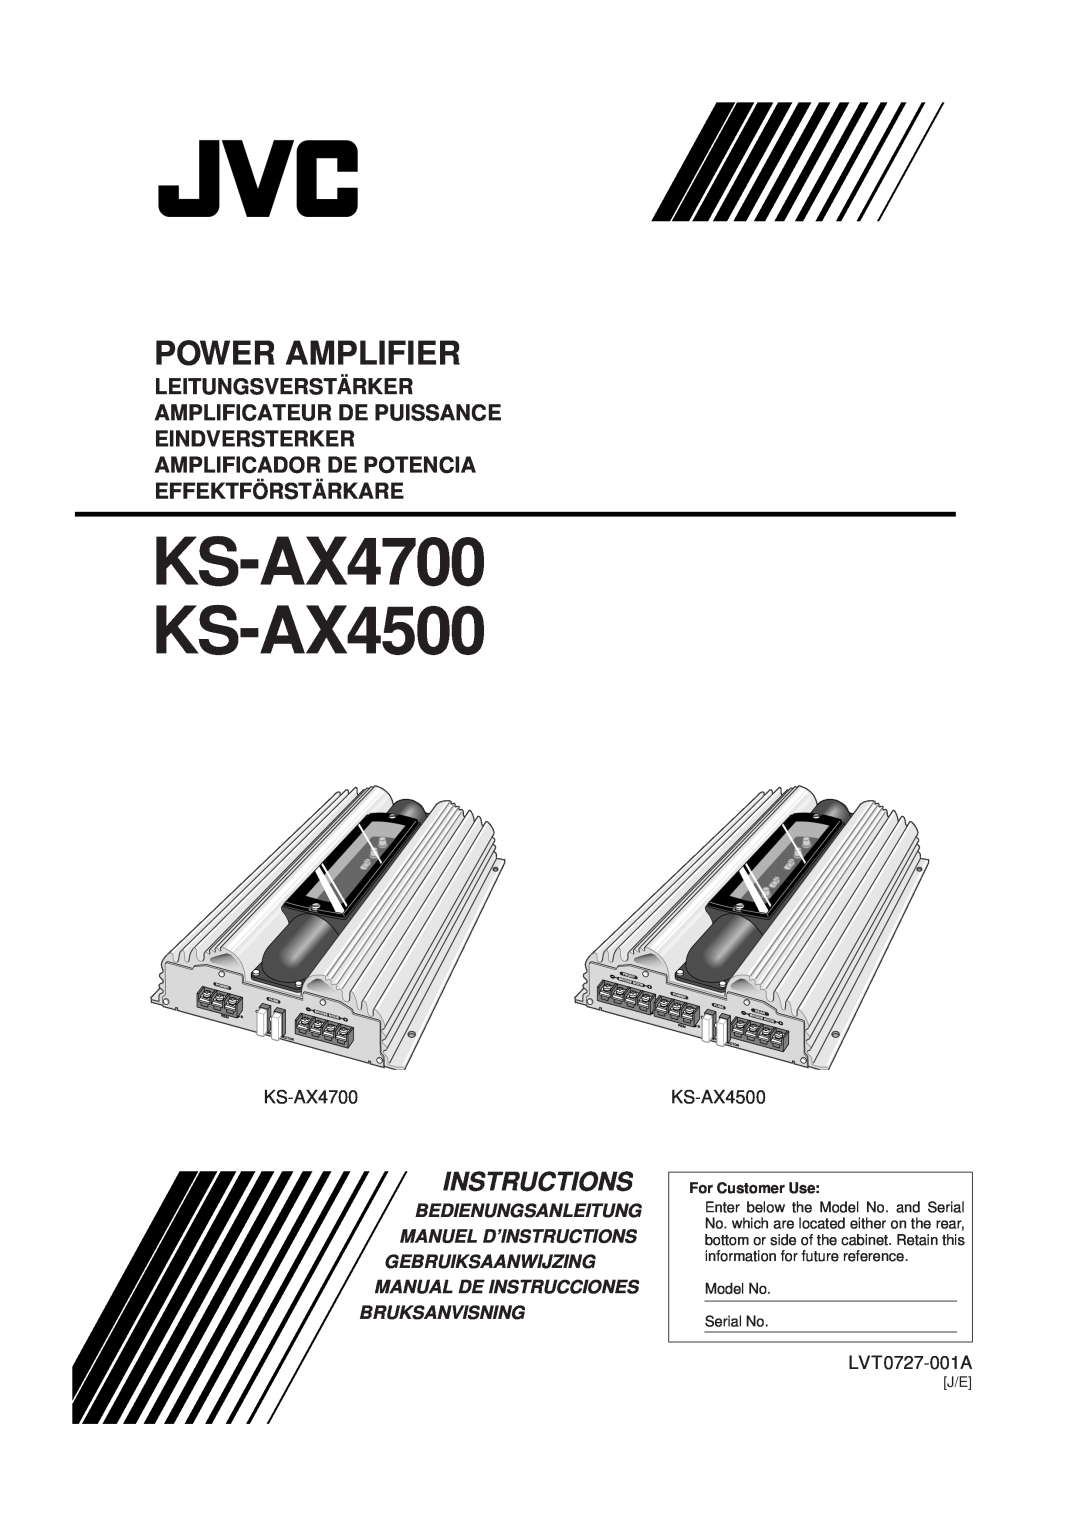 JVC manual LVT0727-001A, KS-AX4700 KS-AX4500, Power Amplifier, Instructions, Effektfö Rstä Rkare, Bruksanvisning 